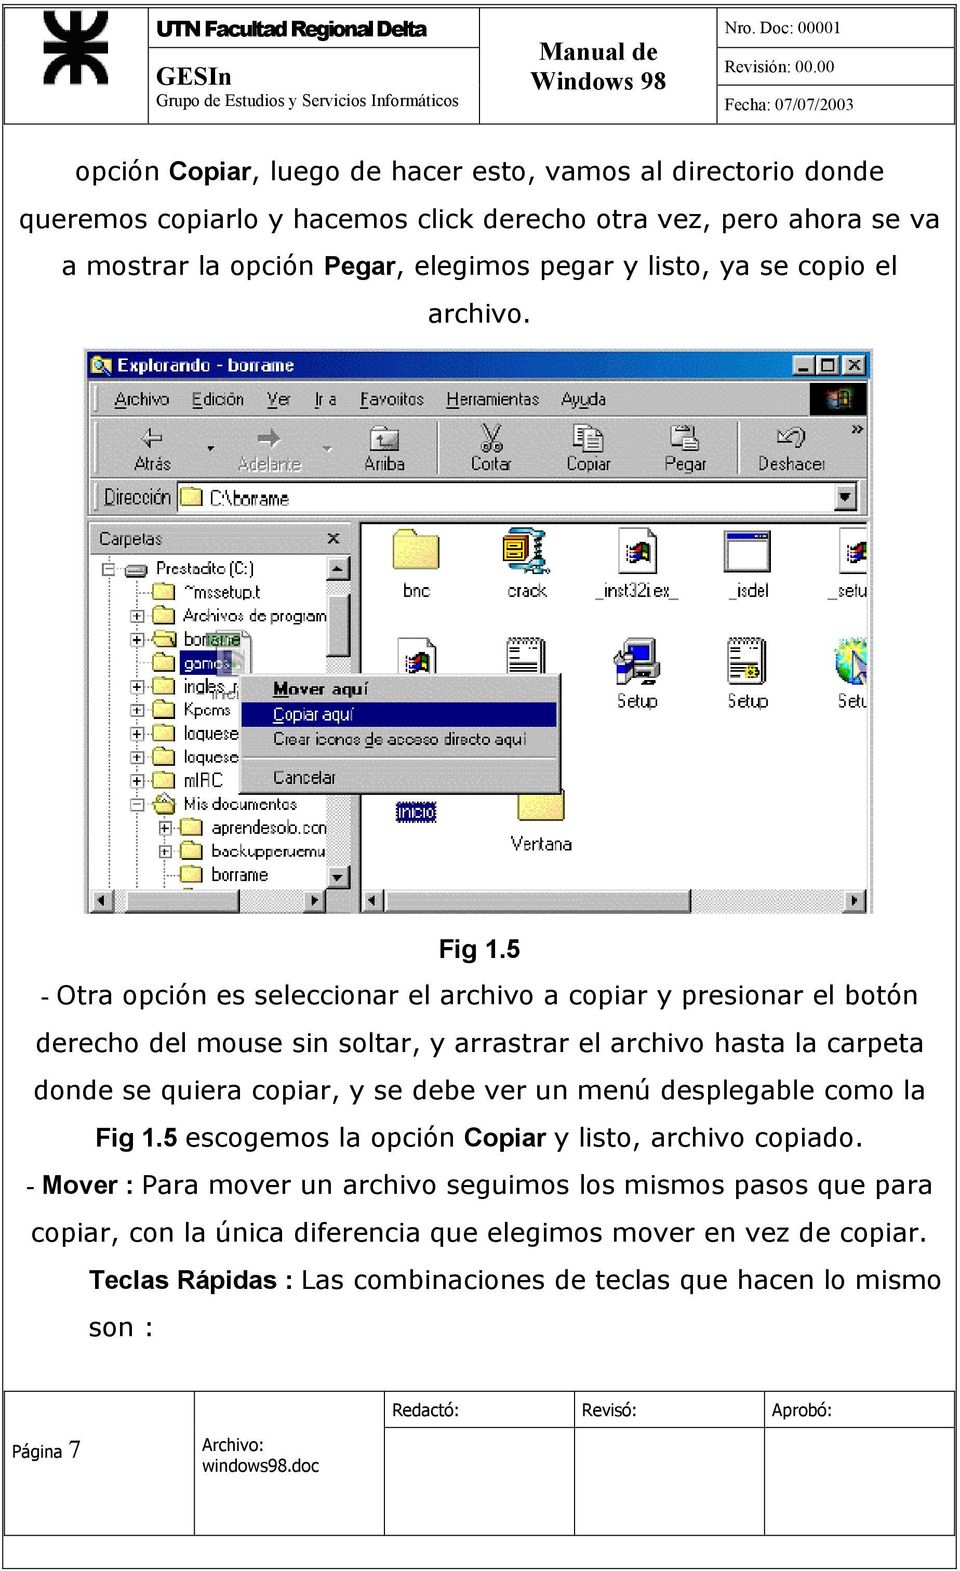 5 - Otra opción es seleccionar el archivo a copiar y presionar el botón derecho del mouse sin soltar, y arrastrar el archivo hasta la carpeta donde se quiera copiar, y se